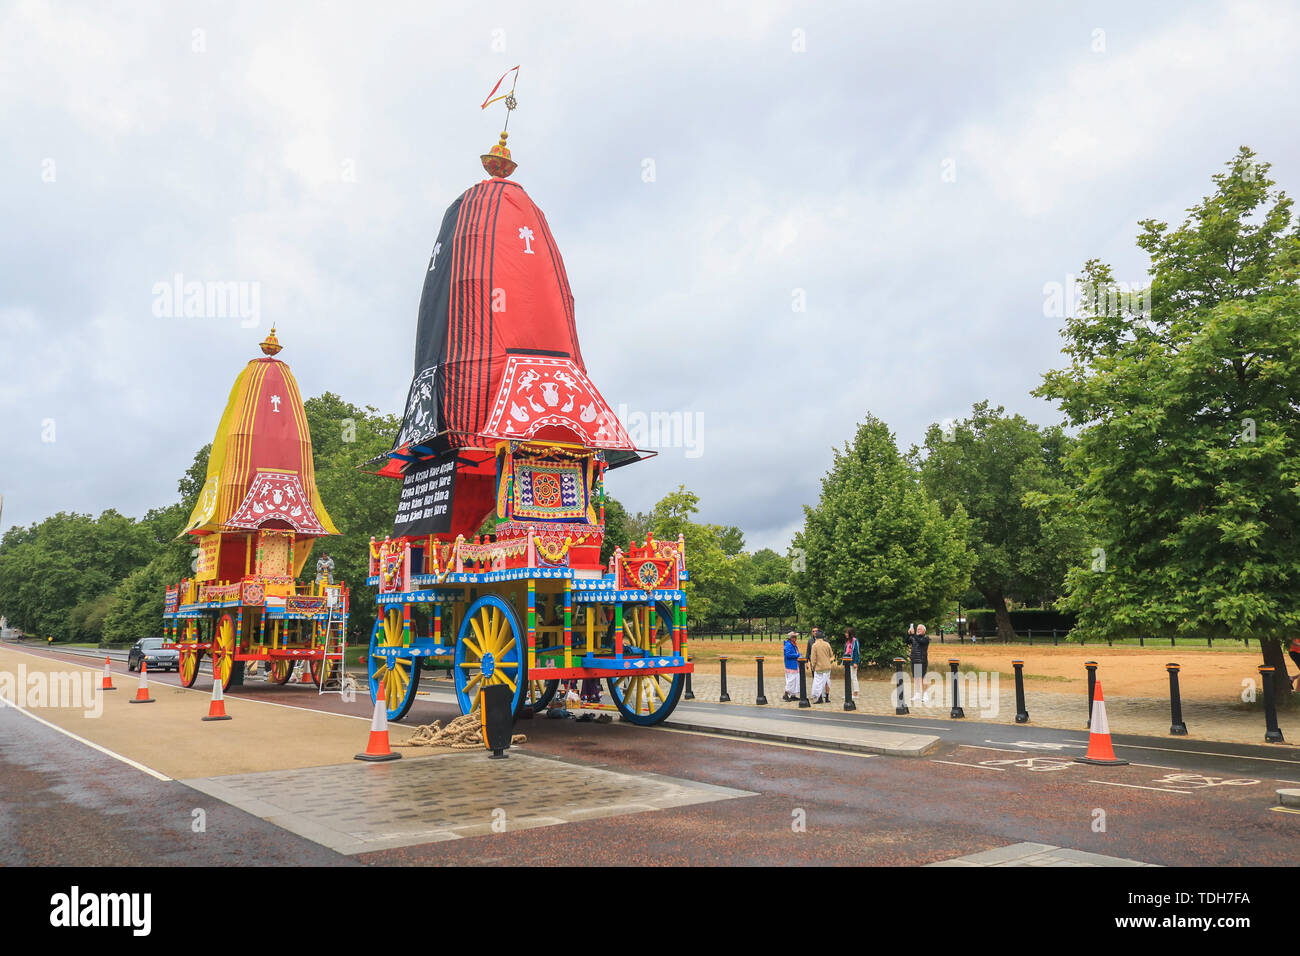 Londres, Royaume-Uni. 16 juin 2019. Trois énormes en bois décoré deula-char en forme (Ratha) prêt à être tiré par les pèlerins et les dévots de Hyde Park Corner à Trafalgar Square pour célébrer le 51e anniversaire de l'événement annuel à l'Rathayatra Char Krishna festival. - Rathayatra les chars en bois transportant des divinités d'Aline, Balarama et Subhadra qui sont tirés à la main par les pèlerins et les dévots Crédit : amer ghazzal/Alamy Live News Banque D'Images